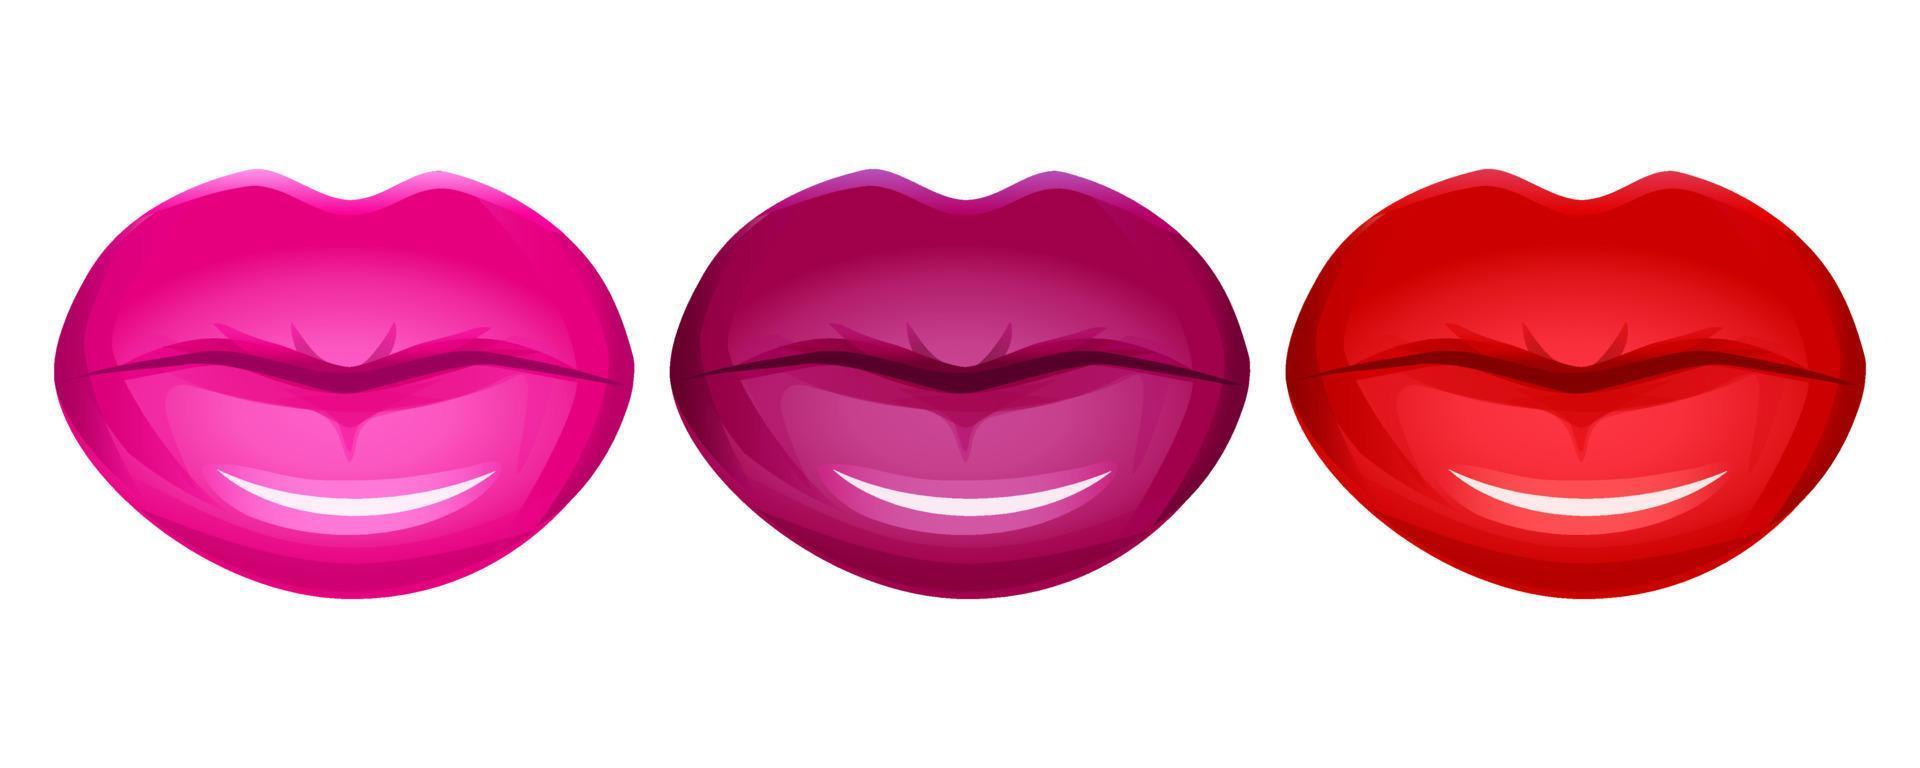 ensemble de vecteurs de lèvres réalistes isolé sur blanc. bouche 3d des femmes, rouge à lèvres brillant brillant rouge. illustration glamour de la mode. vecteur